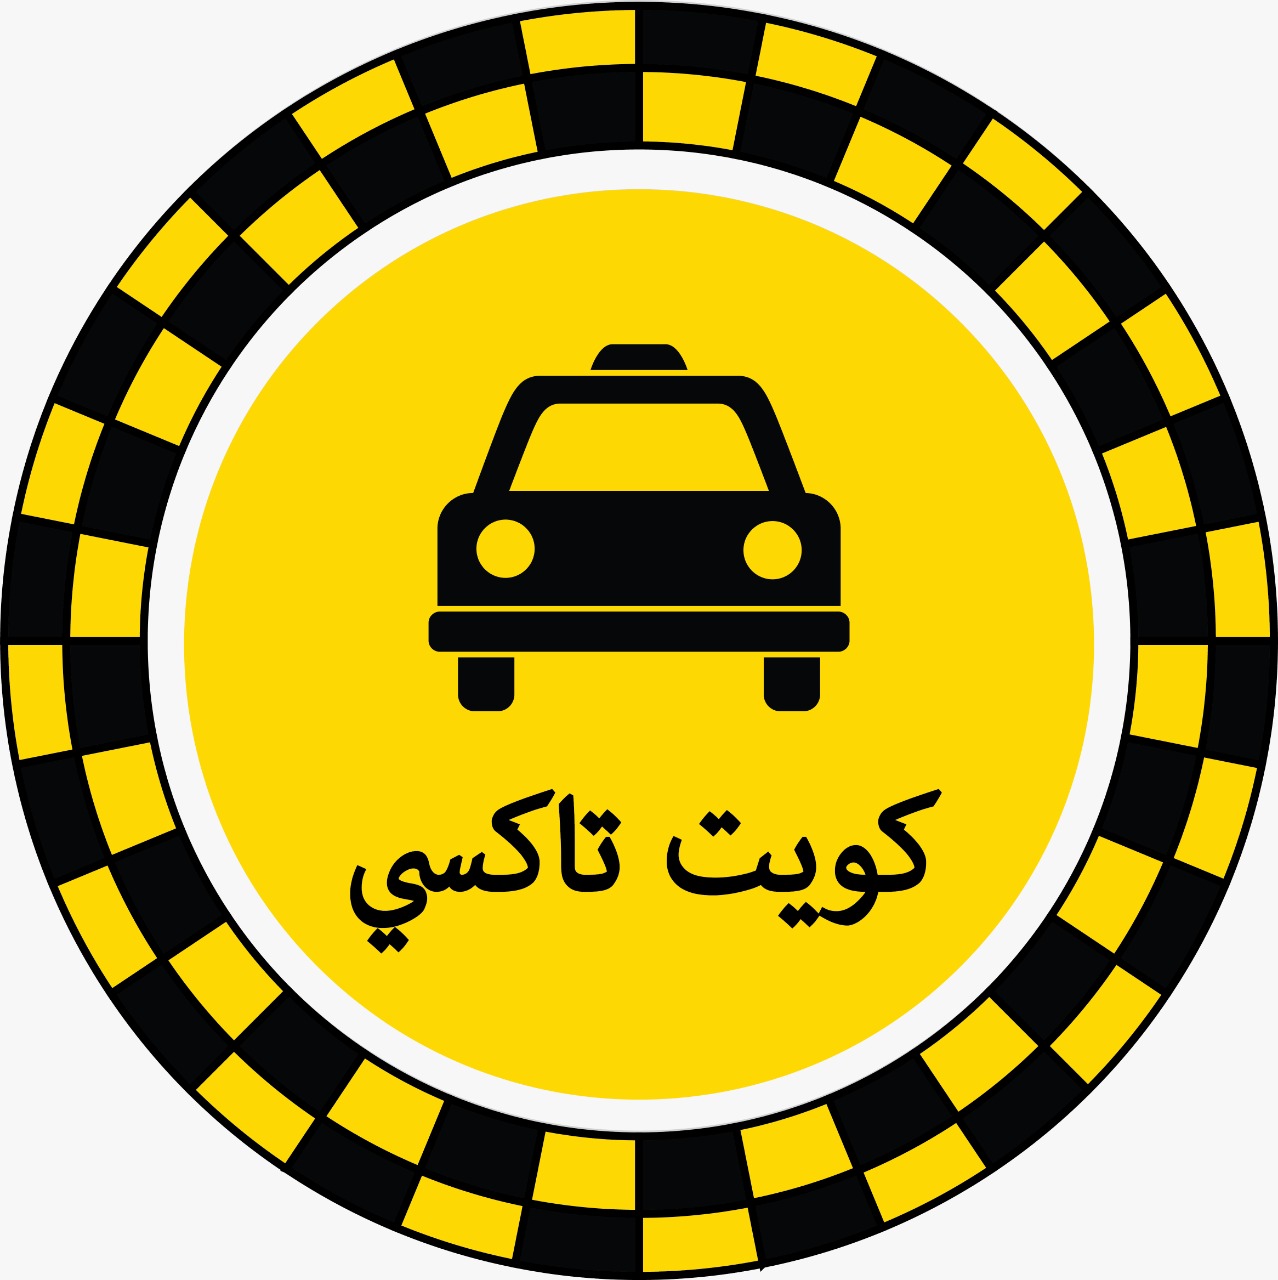 رقم تاكسي الصديق / تاكسي أجرة تحت الطلب الصديق كويت